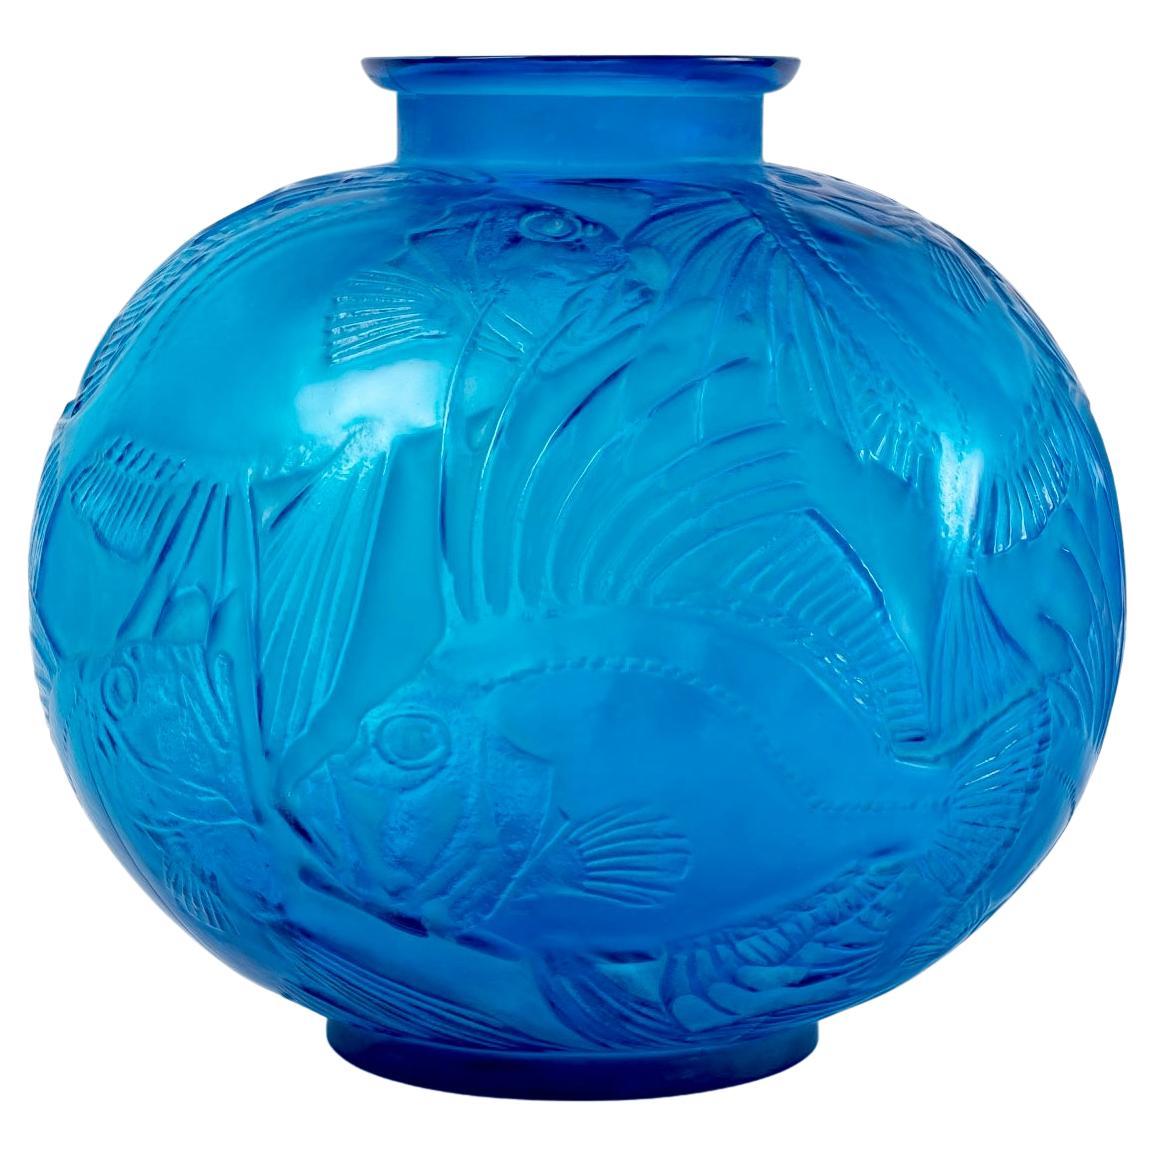 1921 Ren Lalique Poissons-Vase aus elektrisch blauem Glas mit weißer Patina, Fische